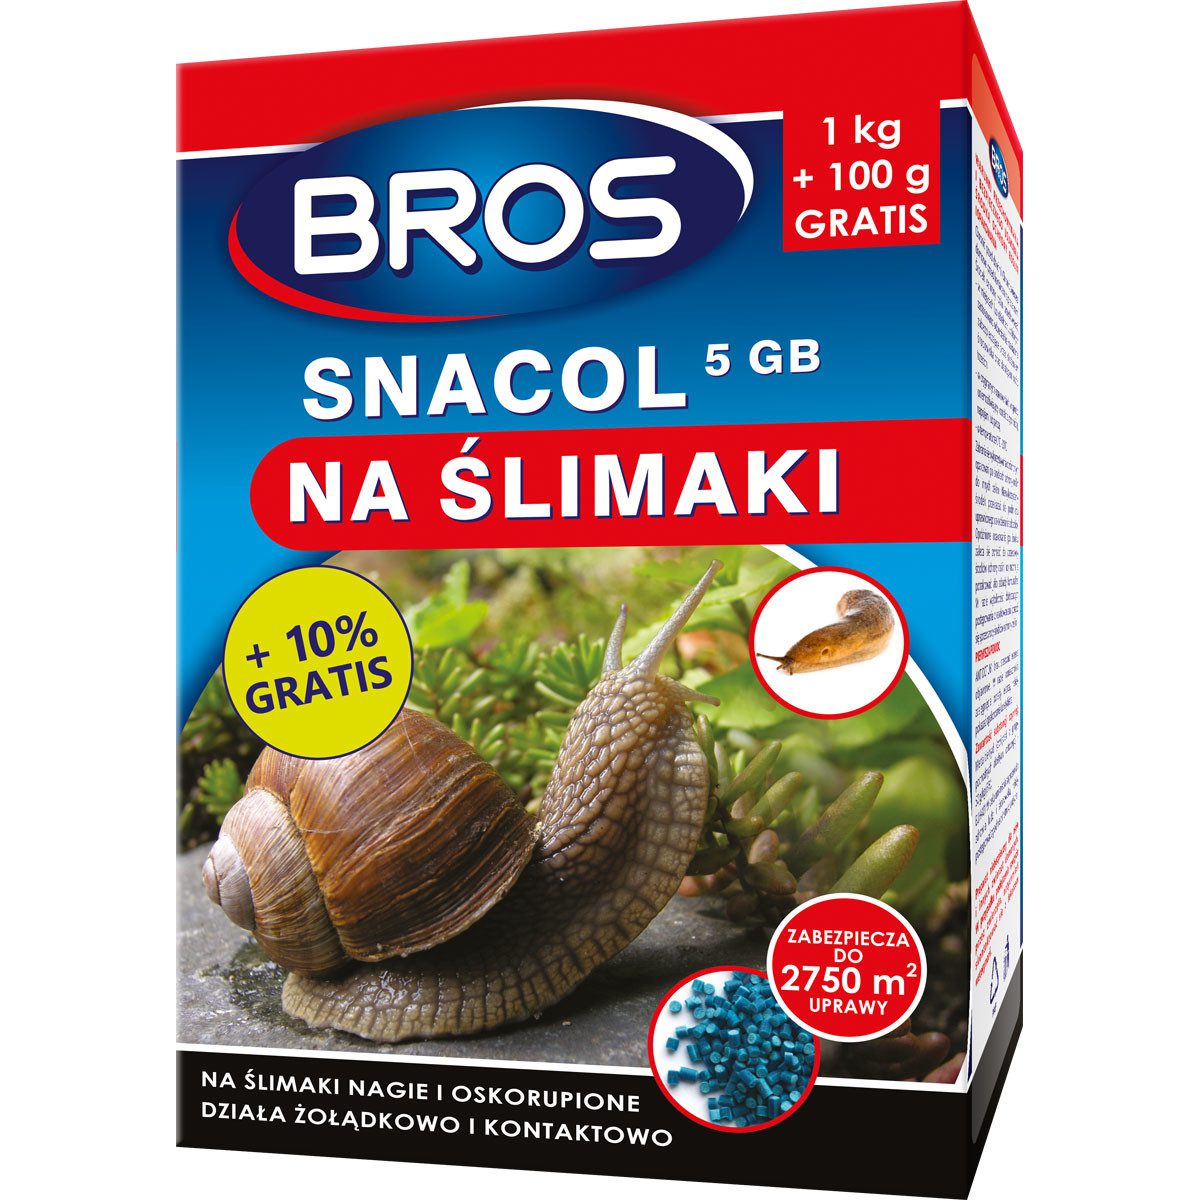 Bros Snacol 5 GB zwalcza ślimaki